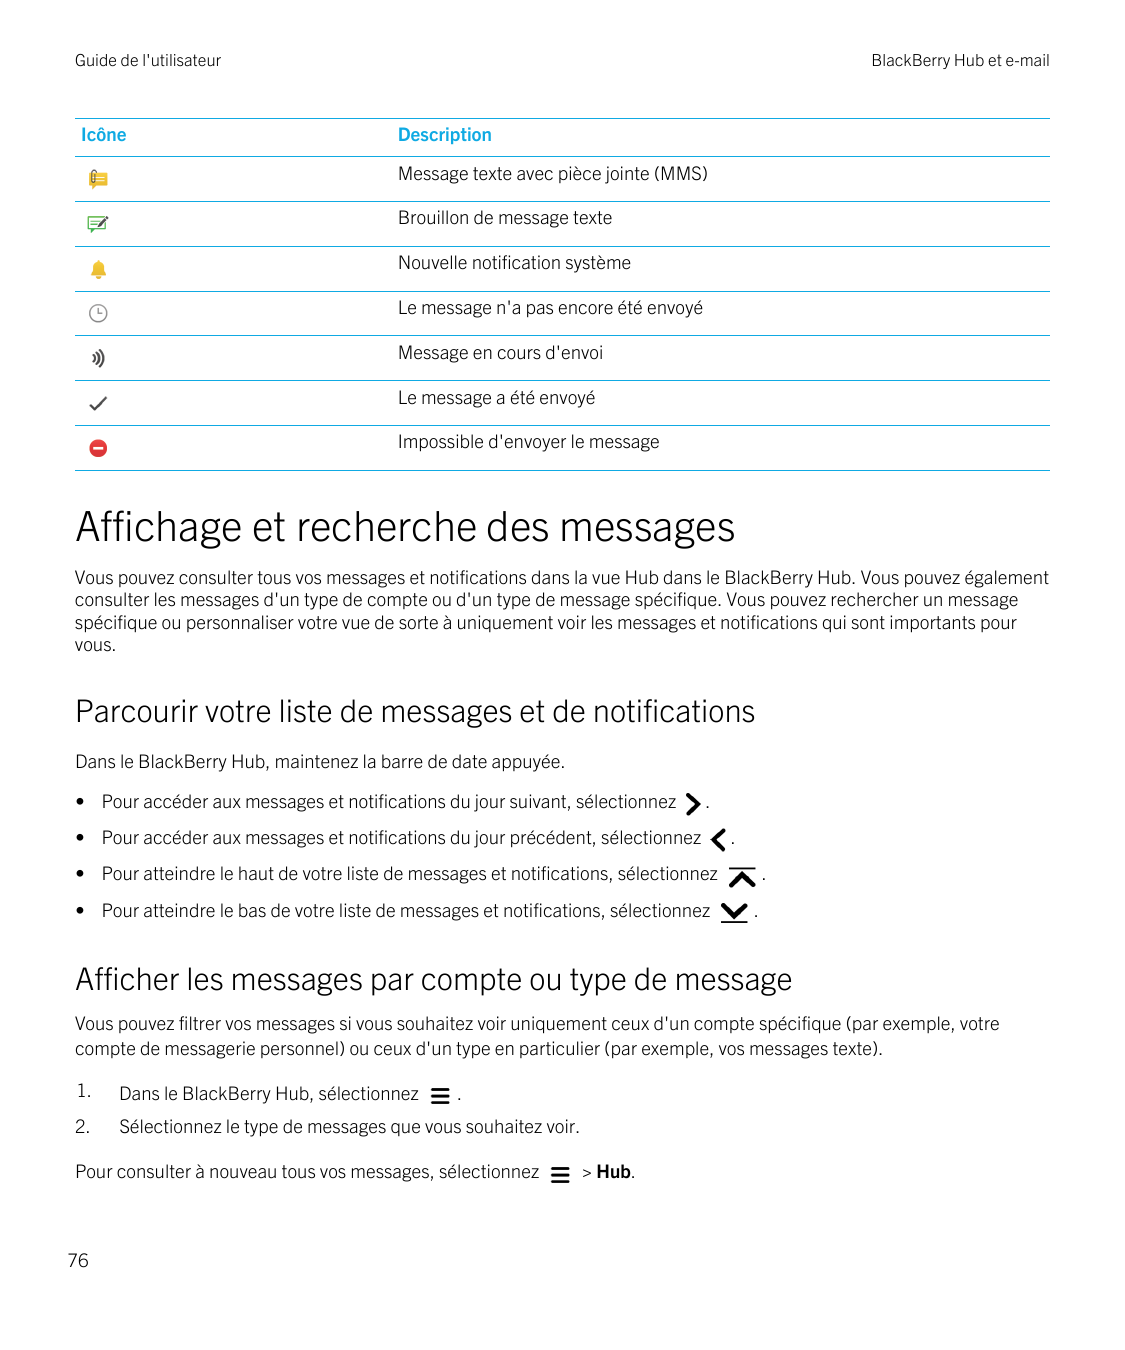 Guide de l'utilisateurIcôneBlackBerry Hub et e-mailDescriptionMessage texte avec pièce jointe (MMS)Brouillon de message texteNou